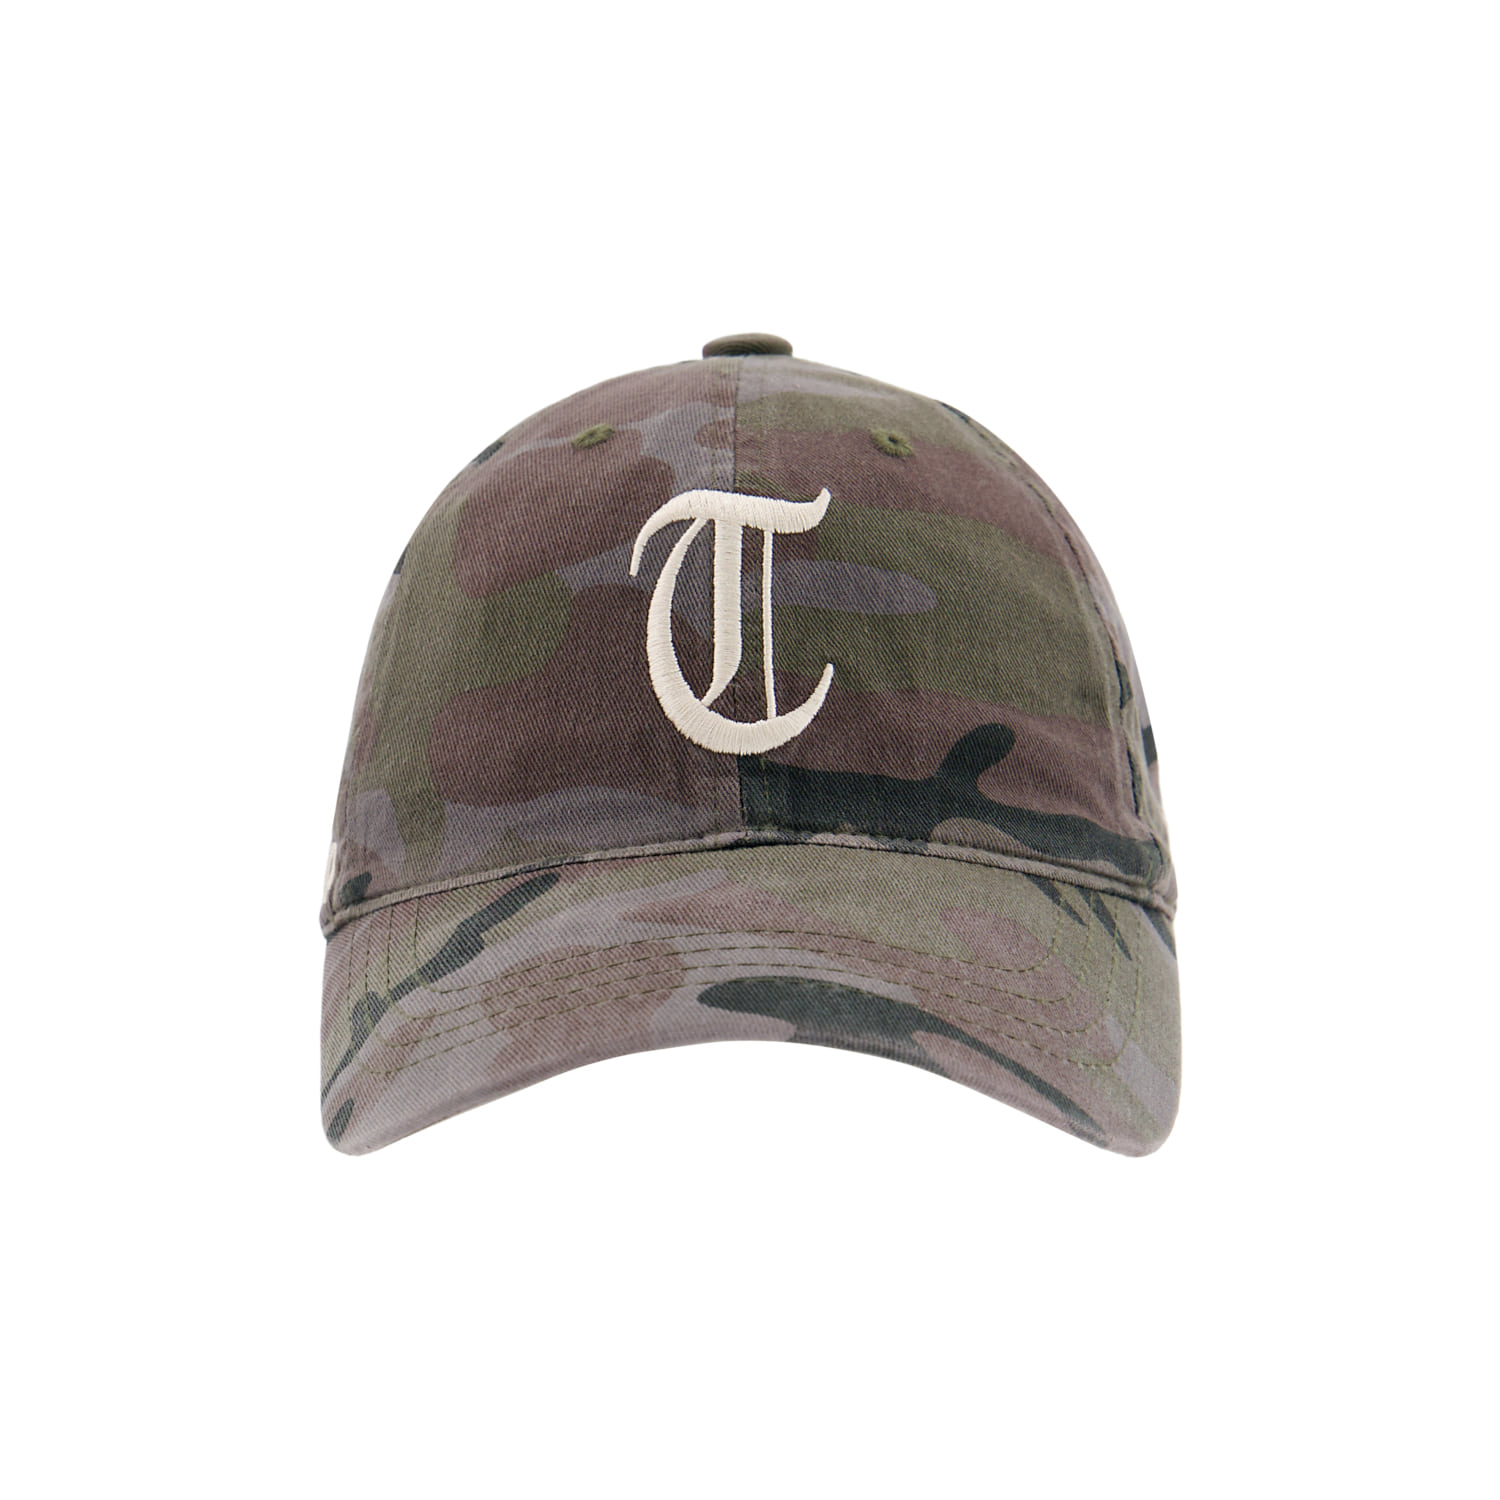 Tuewid souvenir cap ‘T’ ‘U’ ‘E’ ‘W’ ‘I’ ‘D’  (Camo ash)